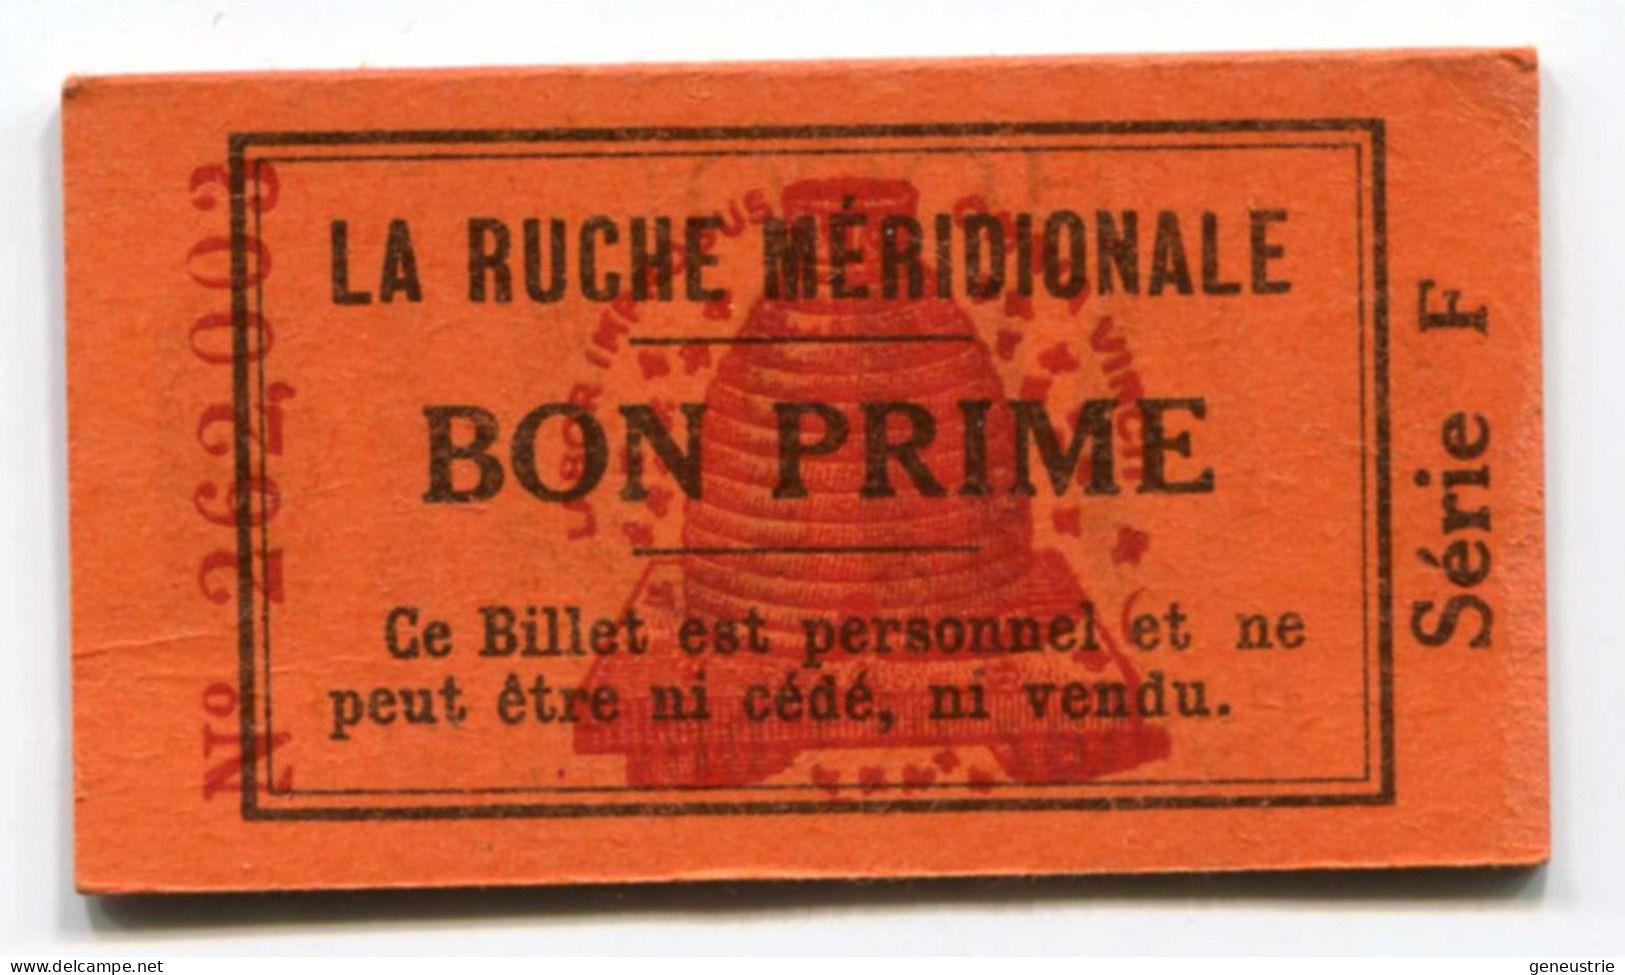 Jeton-carton De Nécessité - Bon Prime "La Ruche Méridionale" à Agen - Pub "Chocolat Poulain" à Blois - Monétaires / De Nécessité